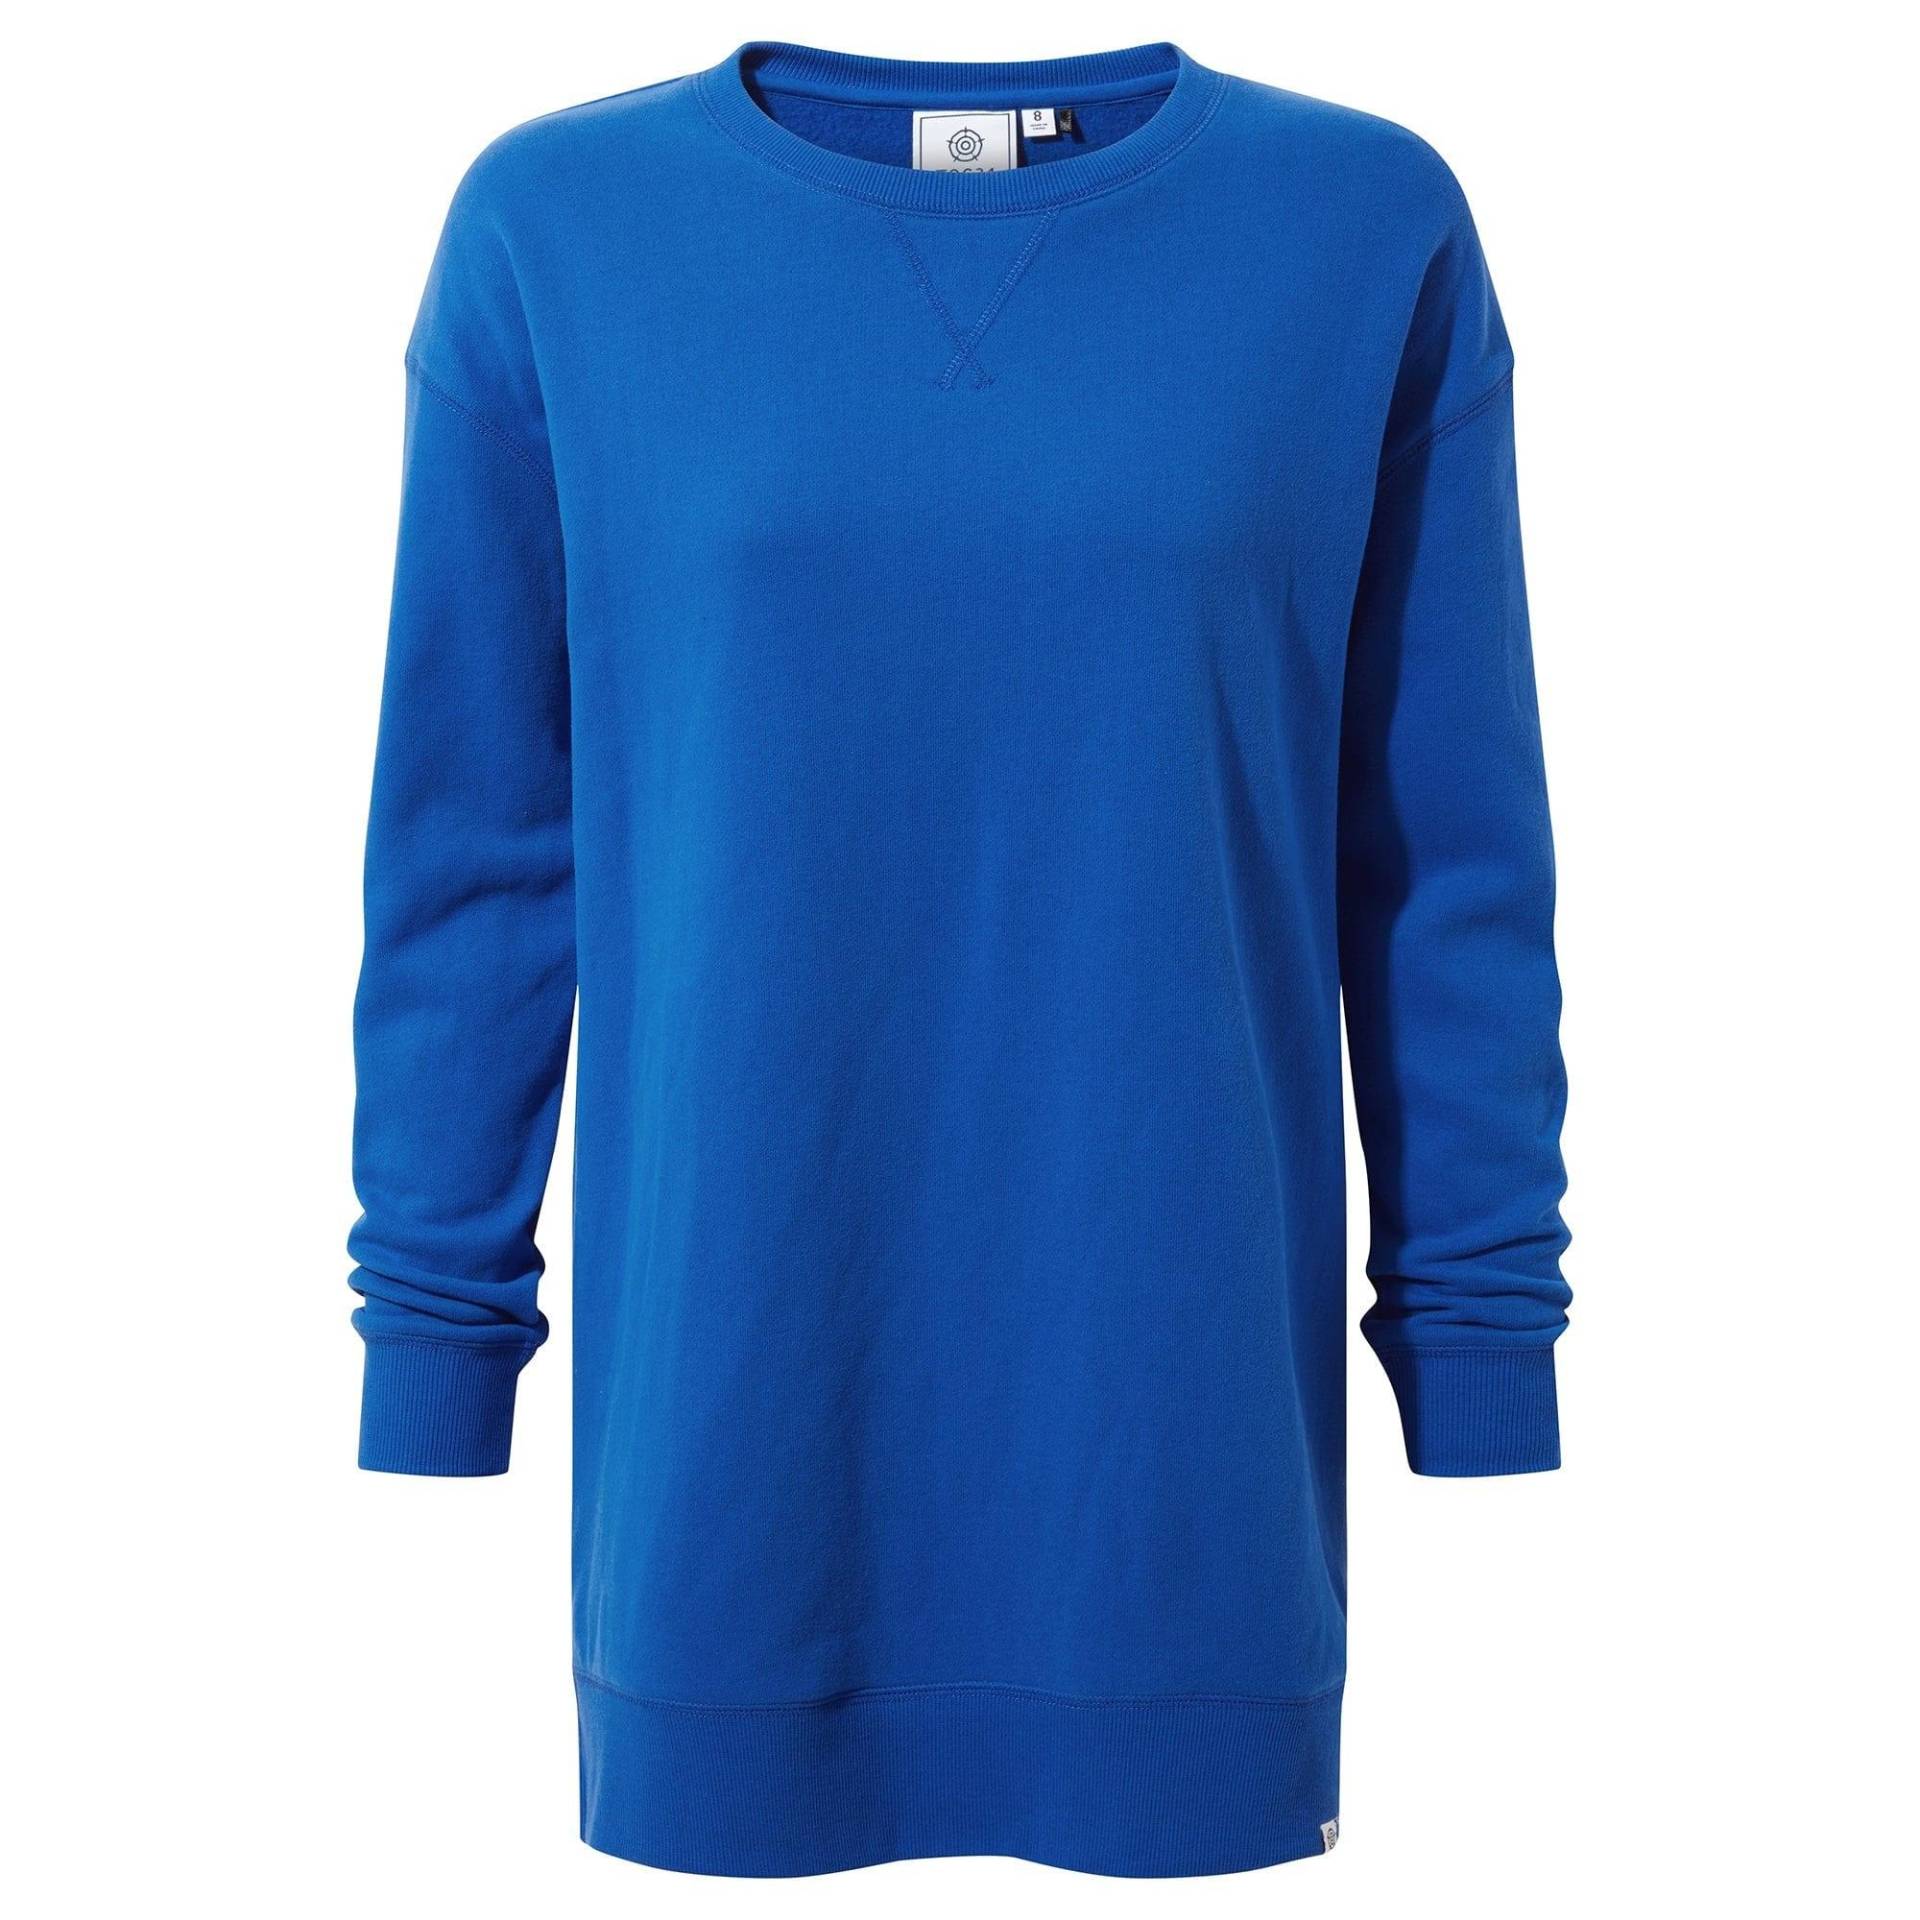 Michelle Sweatshirt Damen Bleached Blau 40 von Tog24